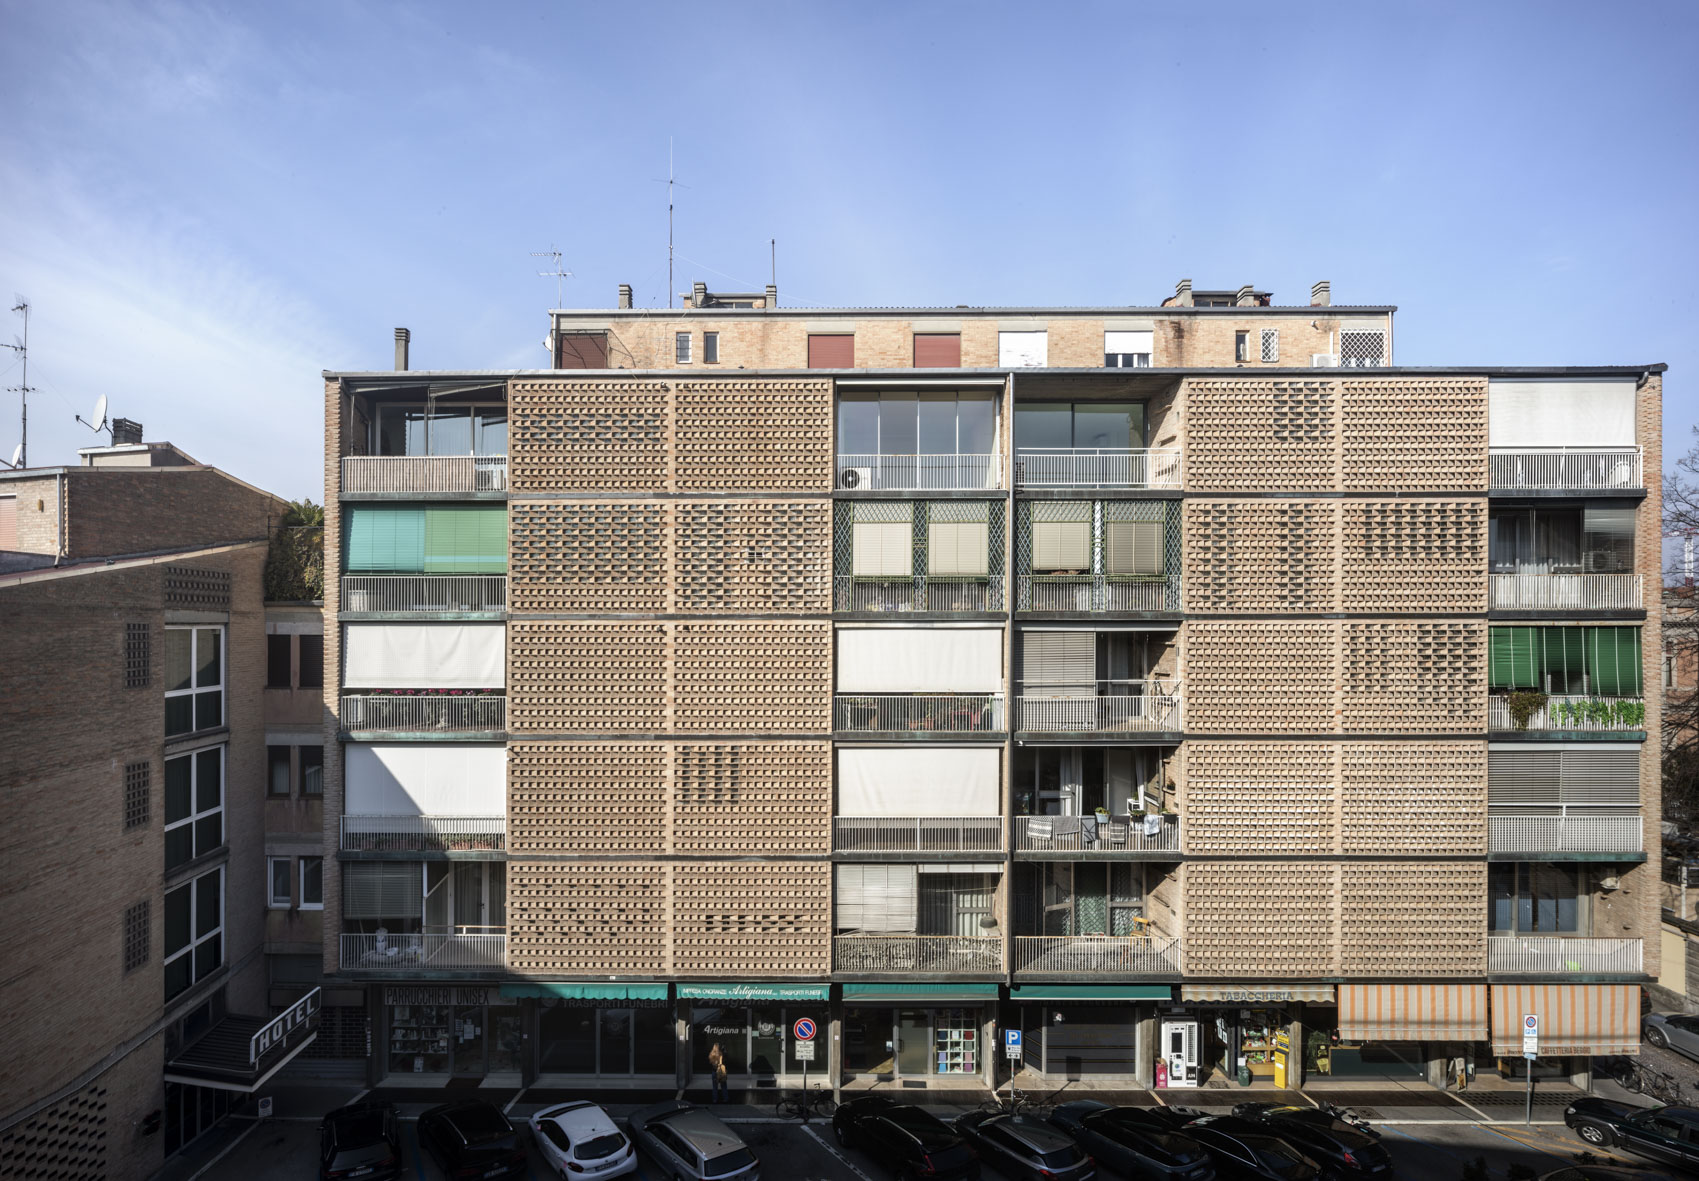 Edificio ad appartamenti e albergo in via Ospedale a Padova - Credit: Alessandra Chemollo